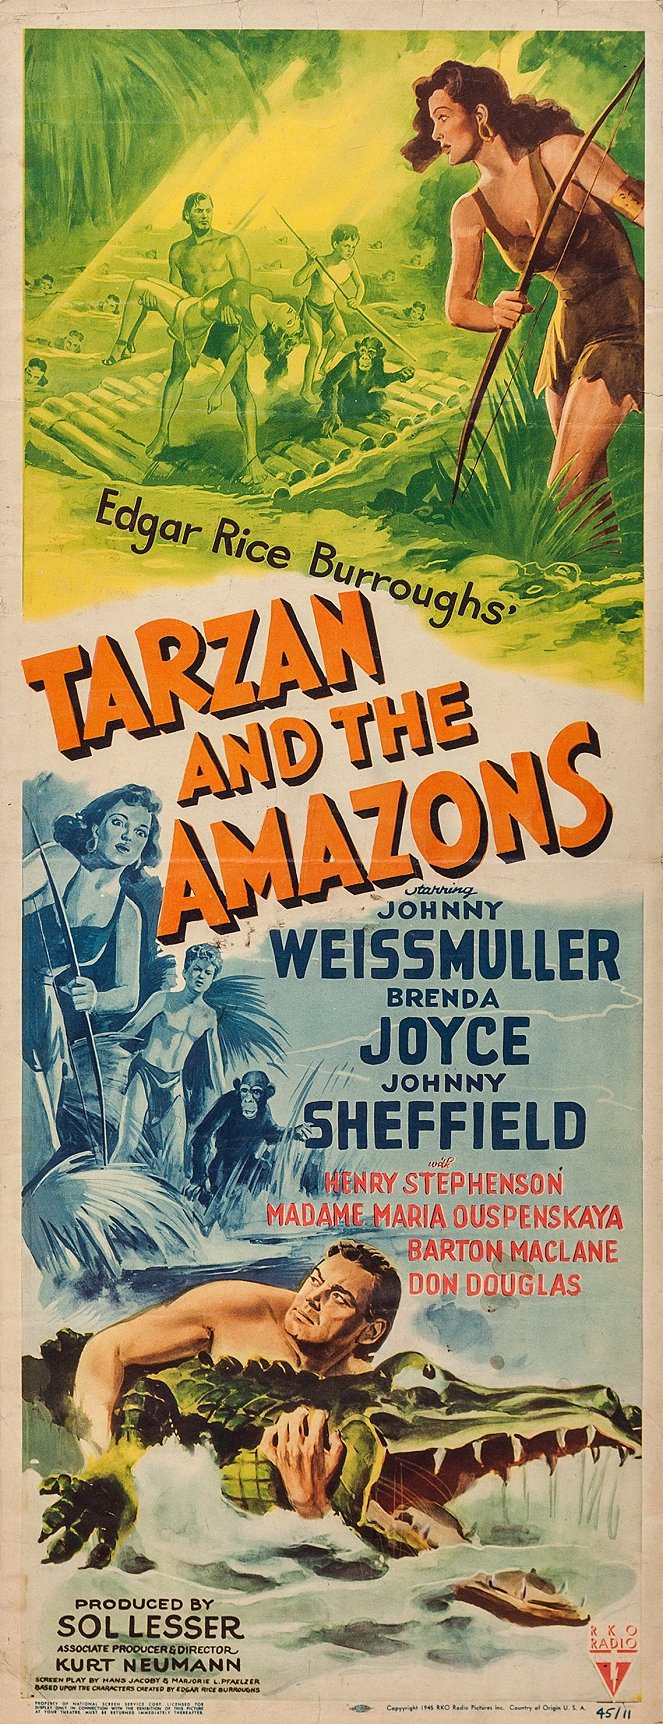 Tarzan and the Amazons - Cartazes